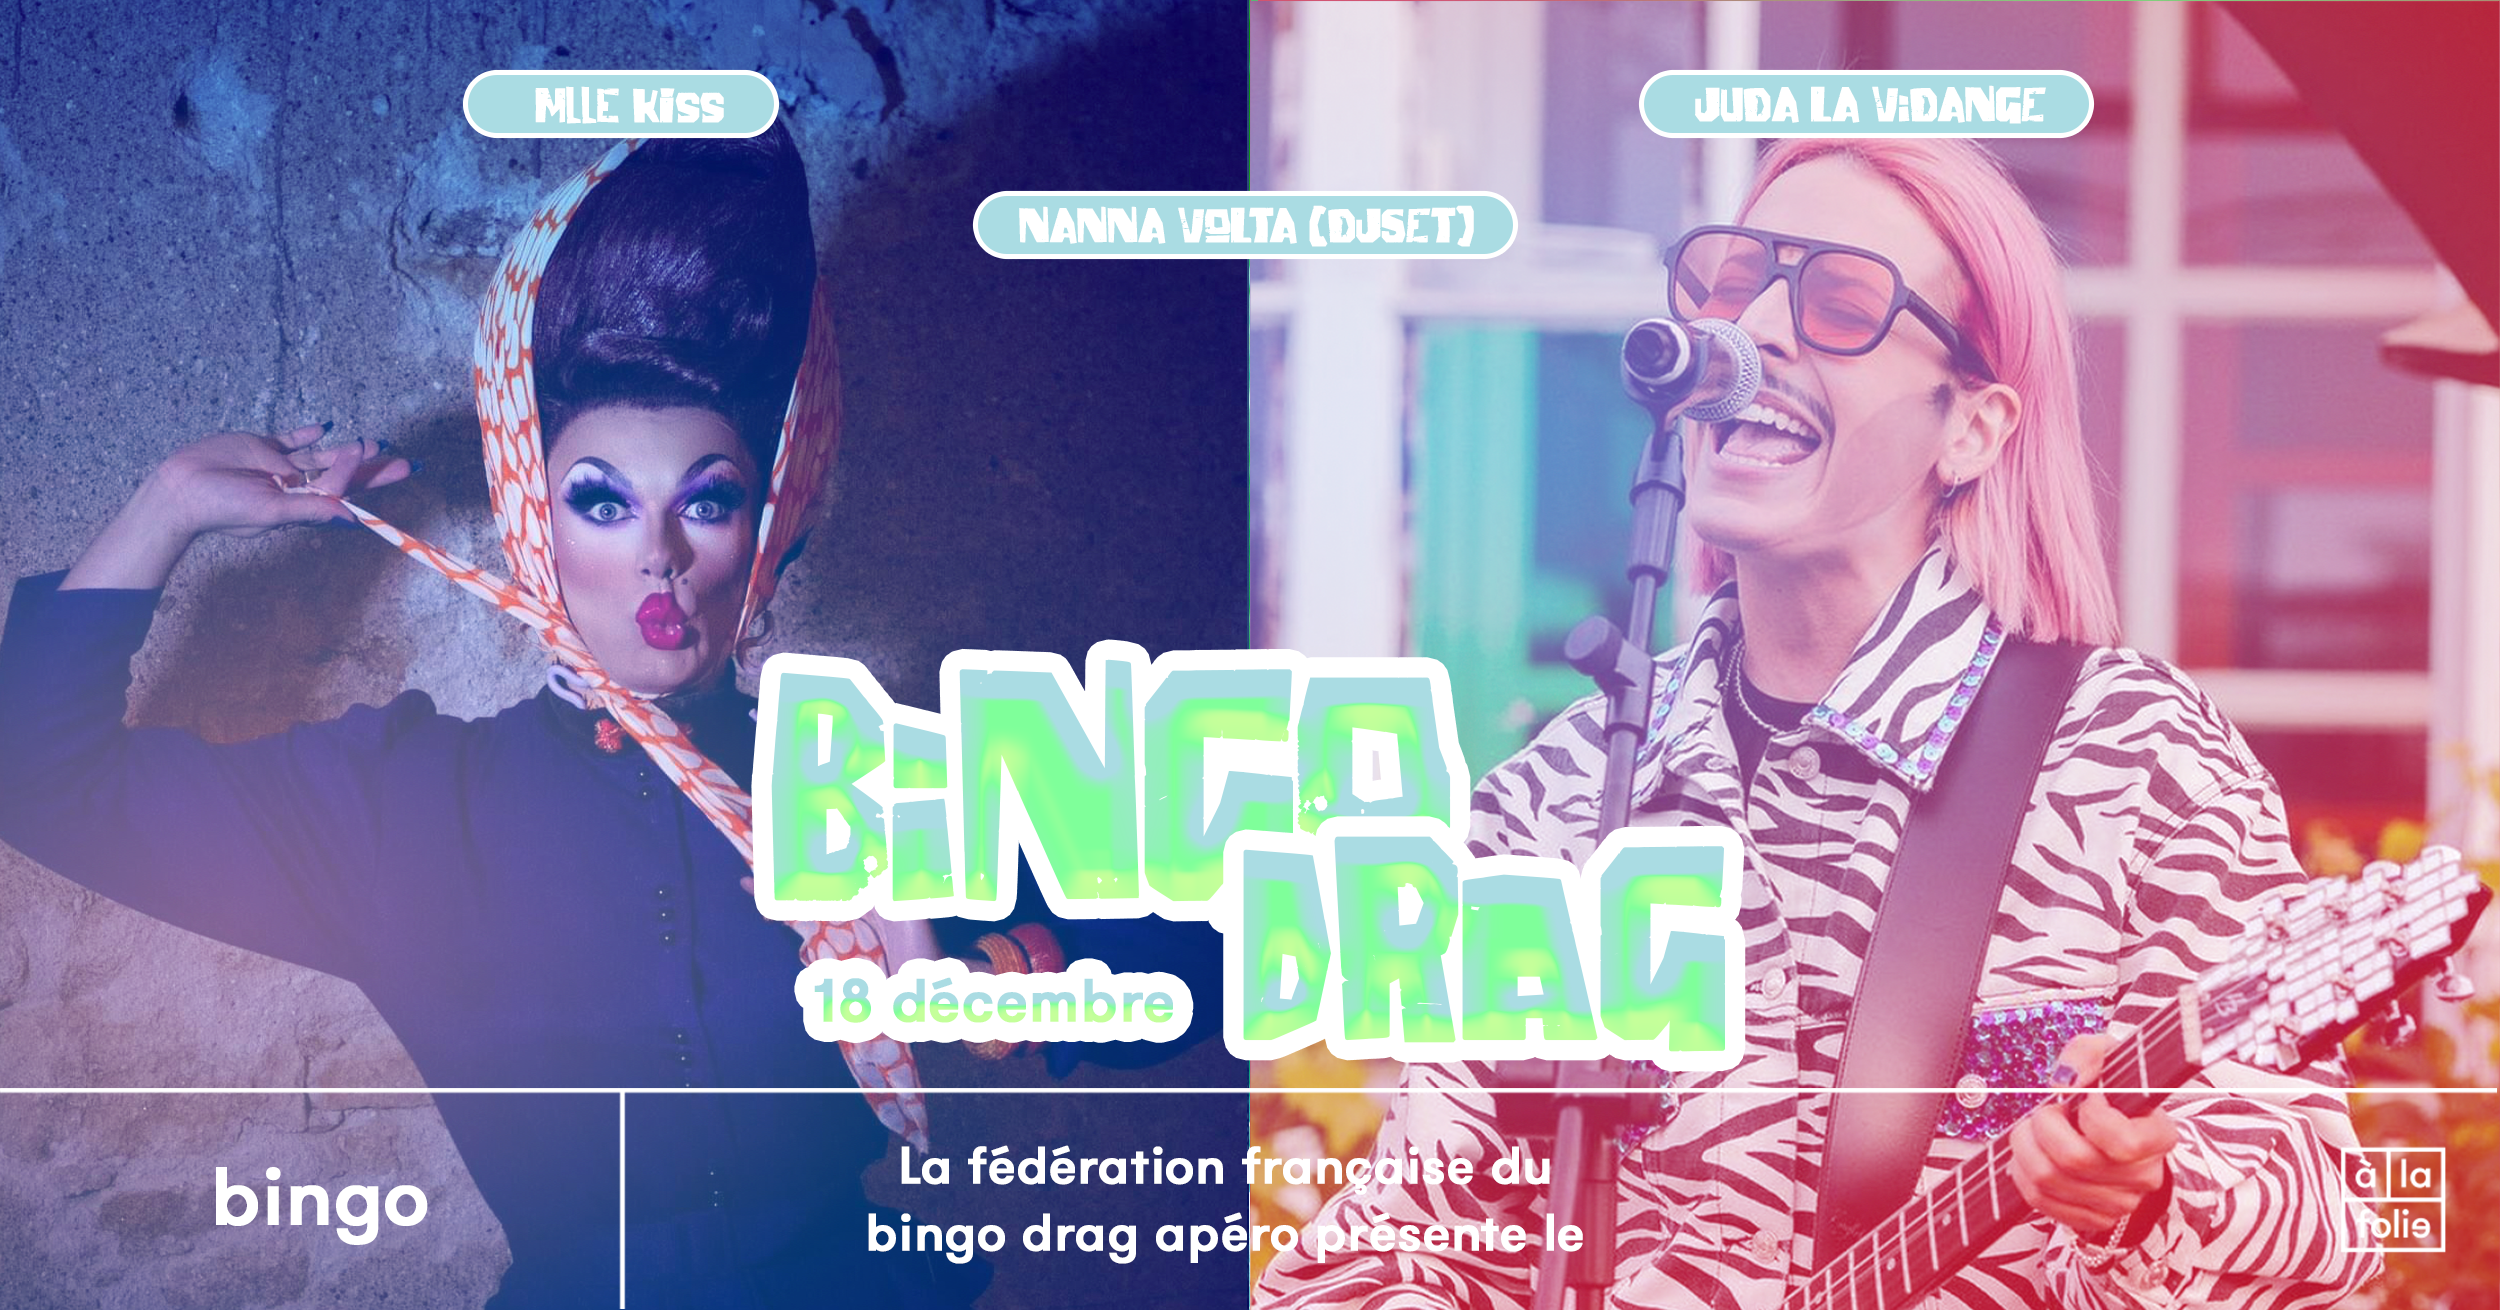 Le Bingo Drag · Mlle Kiss & Juda La Vidange